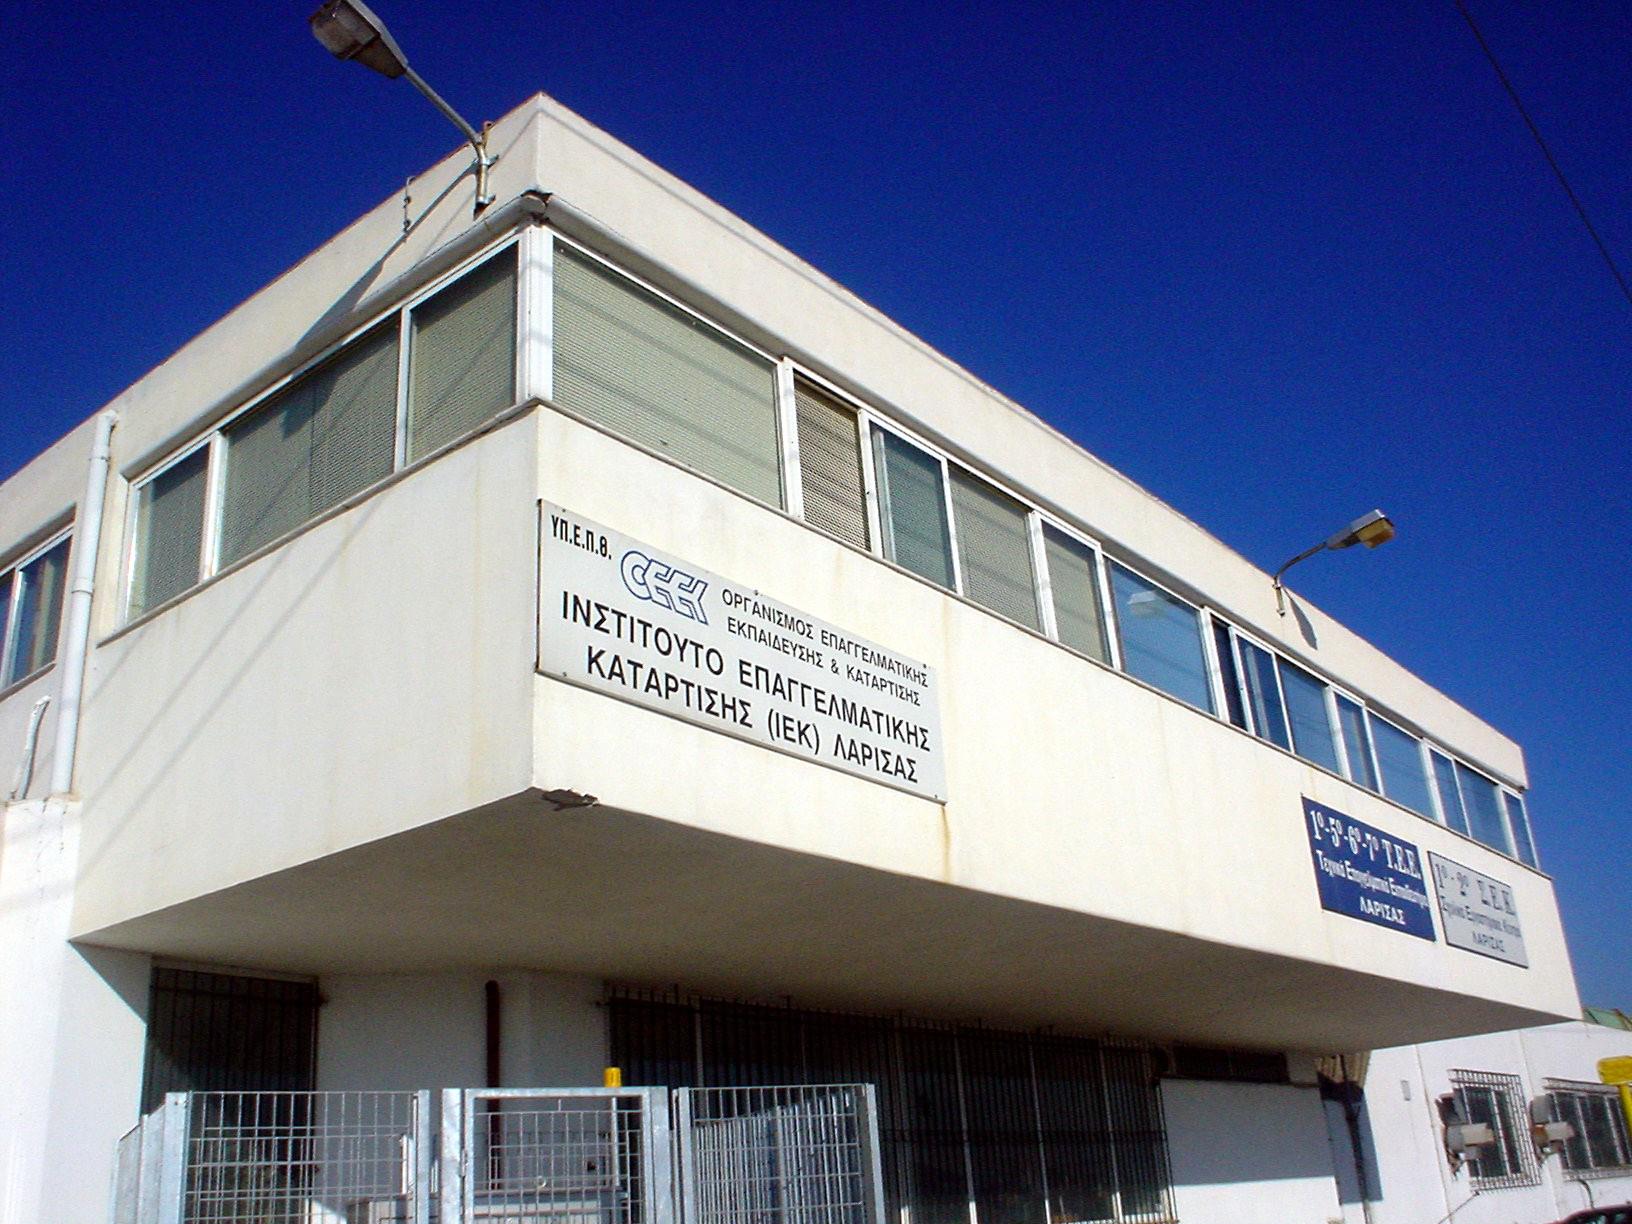 ΔΑΚΕ Λάρισας: Καθηγητές μετακινούνται στα ΔΙΕΚ με εντολή του υπουργείου  